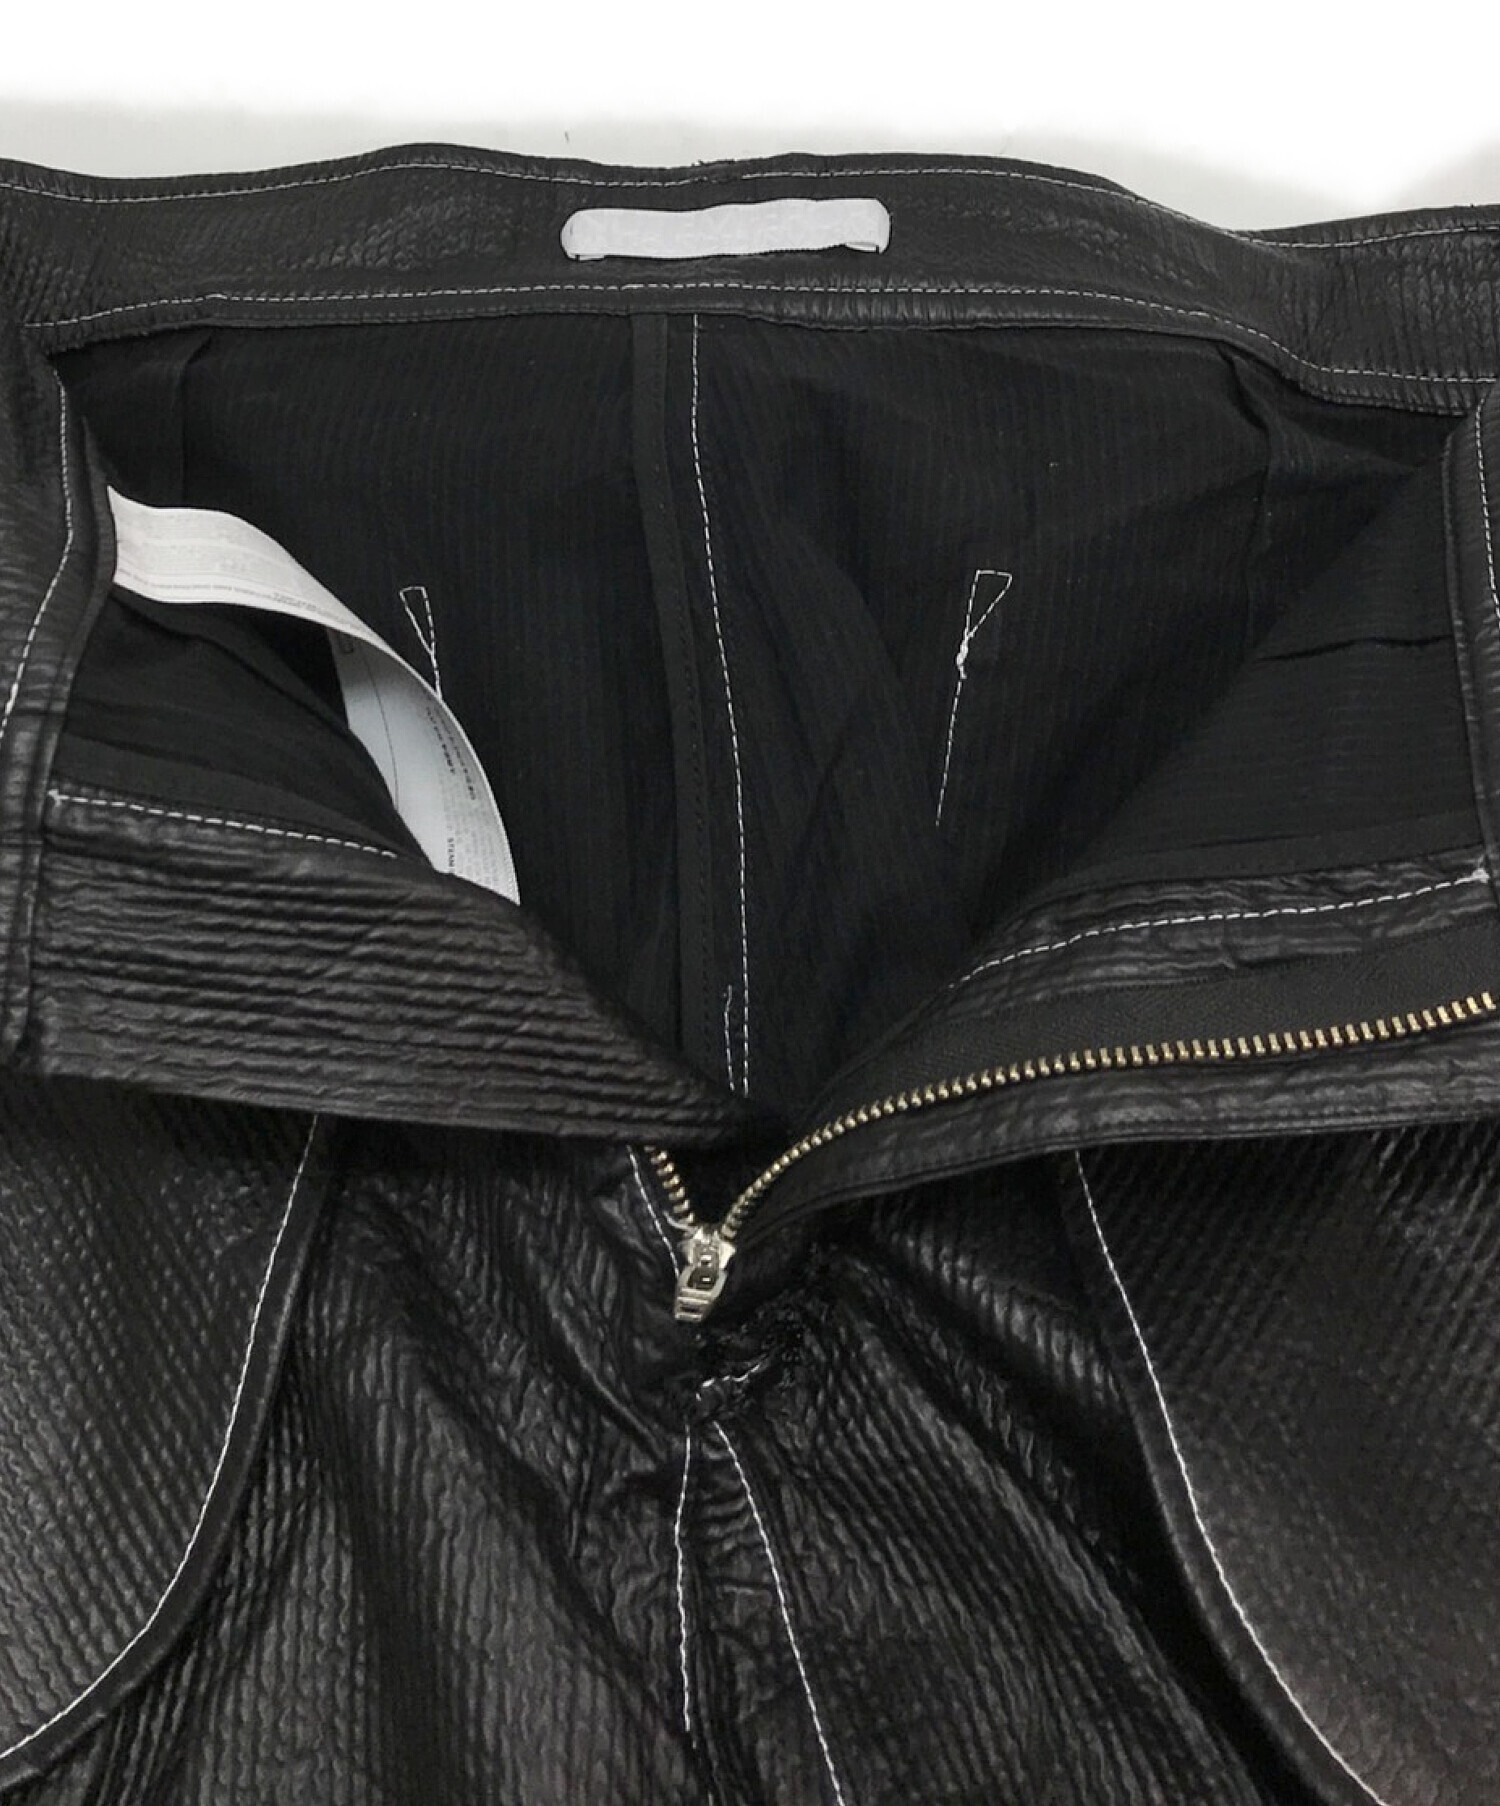 NUTEMPEROR (ニュートエンペラー) ワイドポリレザーパンツ / WIDE PU leather pants ブラック サイズ:3